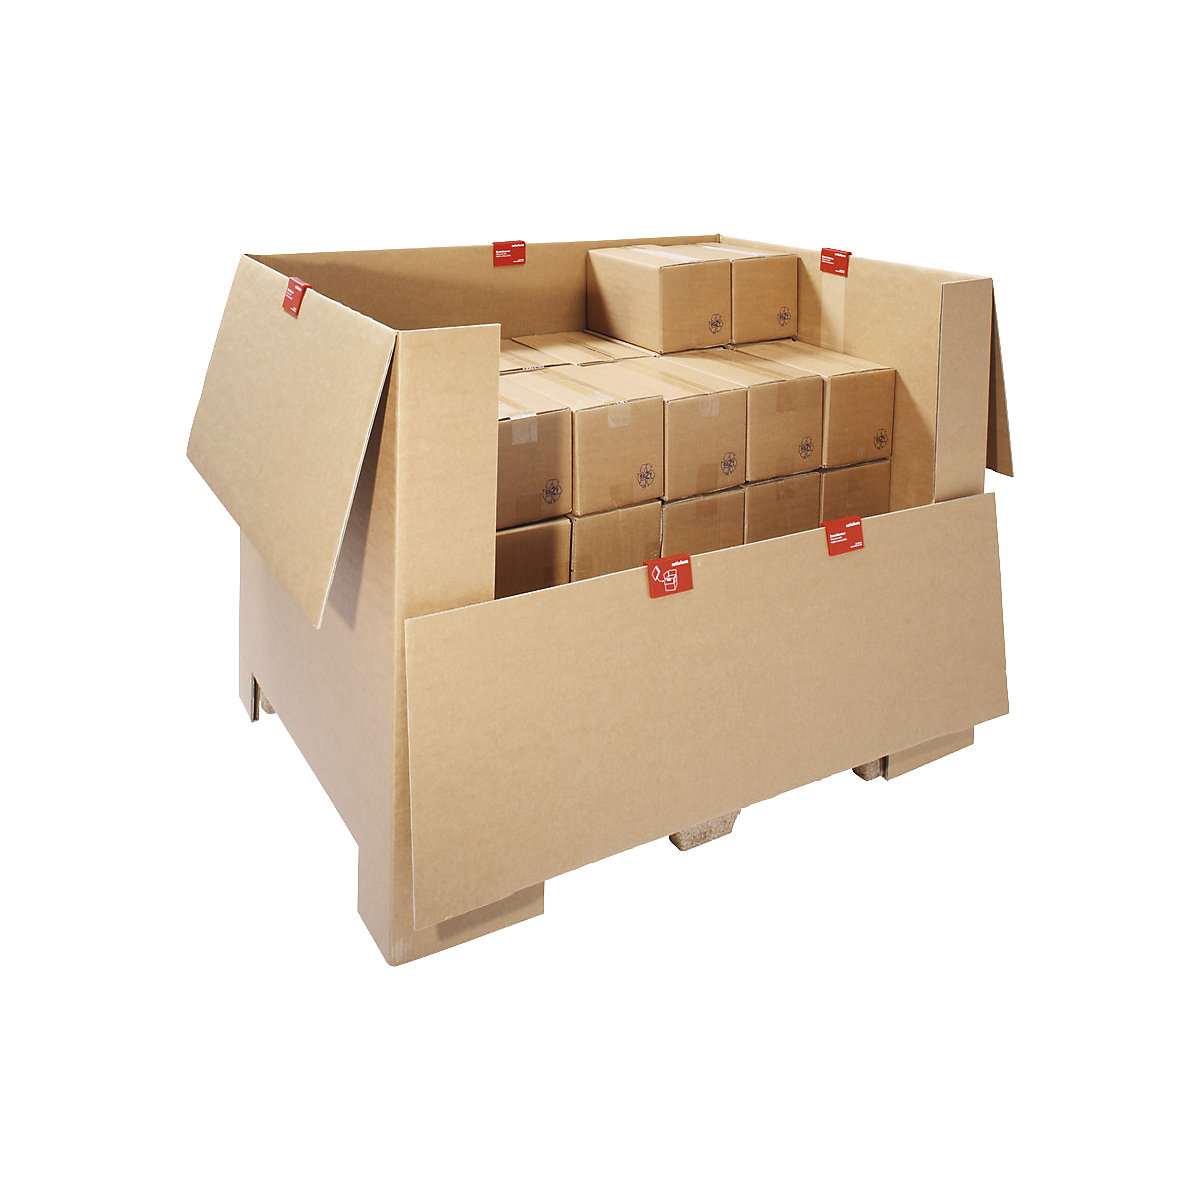 Karton für Pressholz-Palette, braun, LxBxH 1200 x 800 x 790 mm, 1 Europalette, ab 10 Stk-1